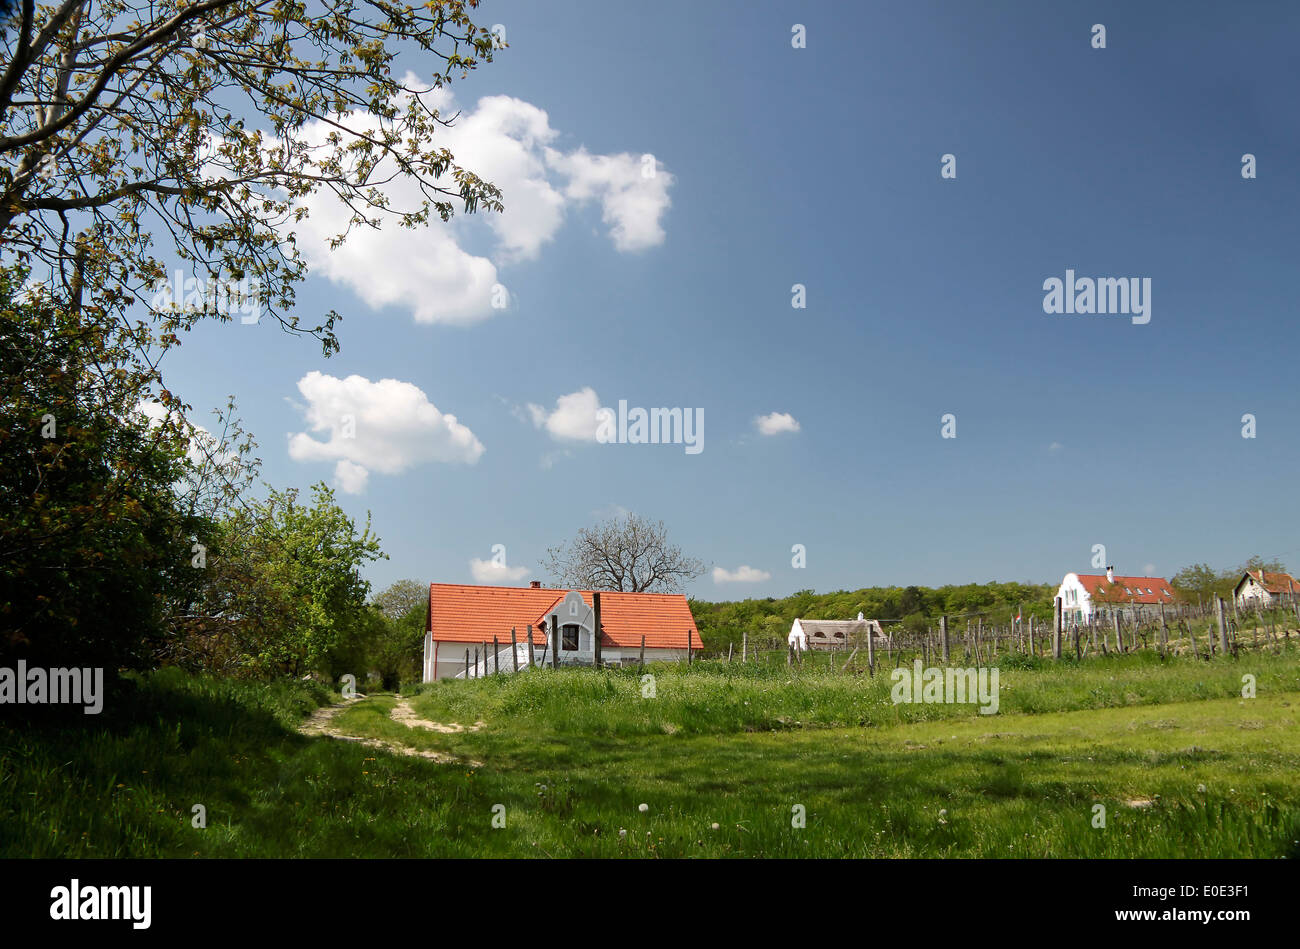 Village landscape near Aszofö at Lake Balaton, Hungary Stock Photo